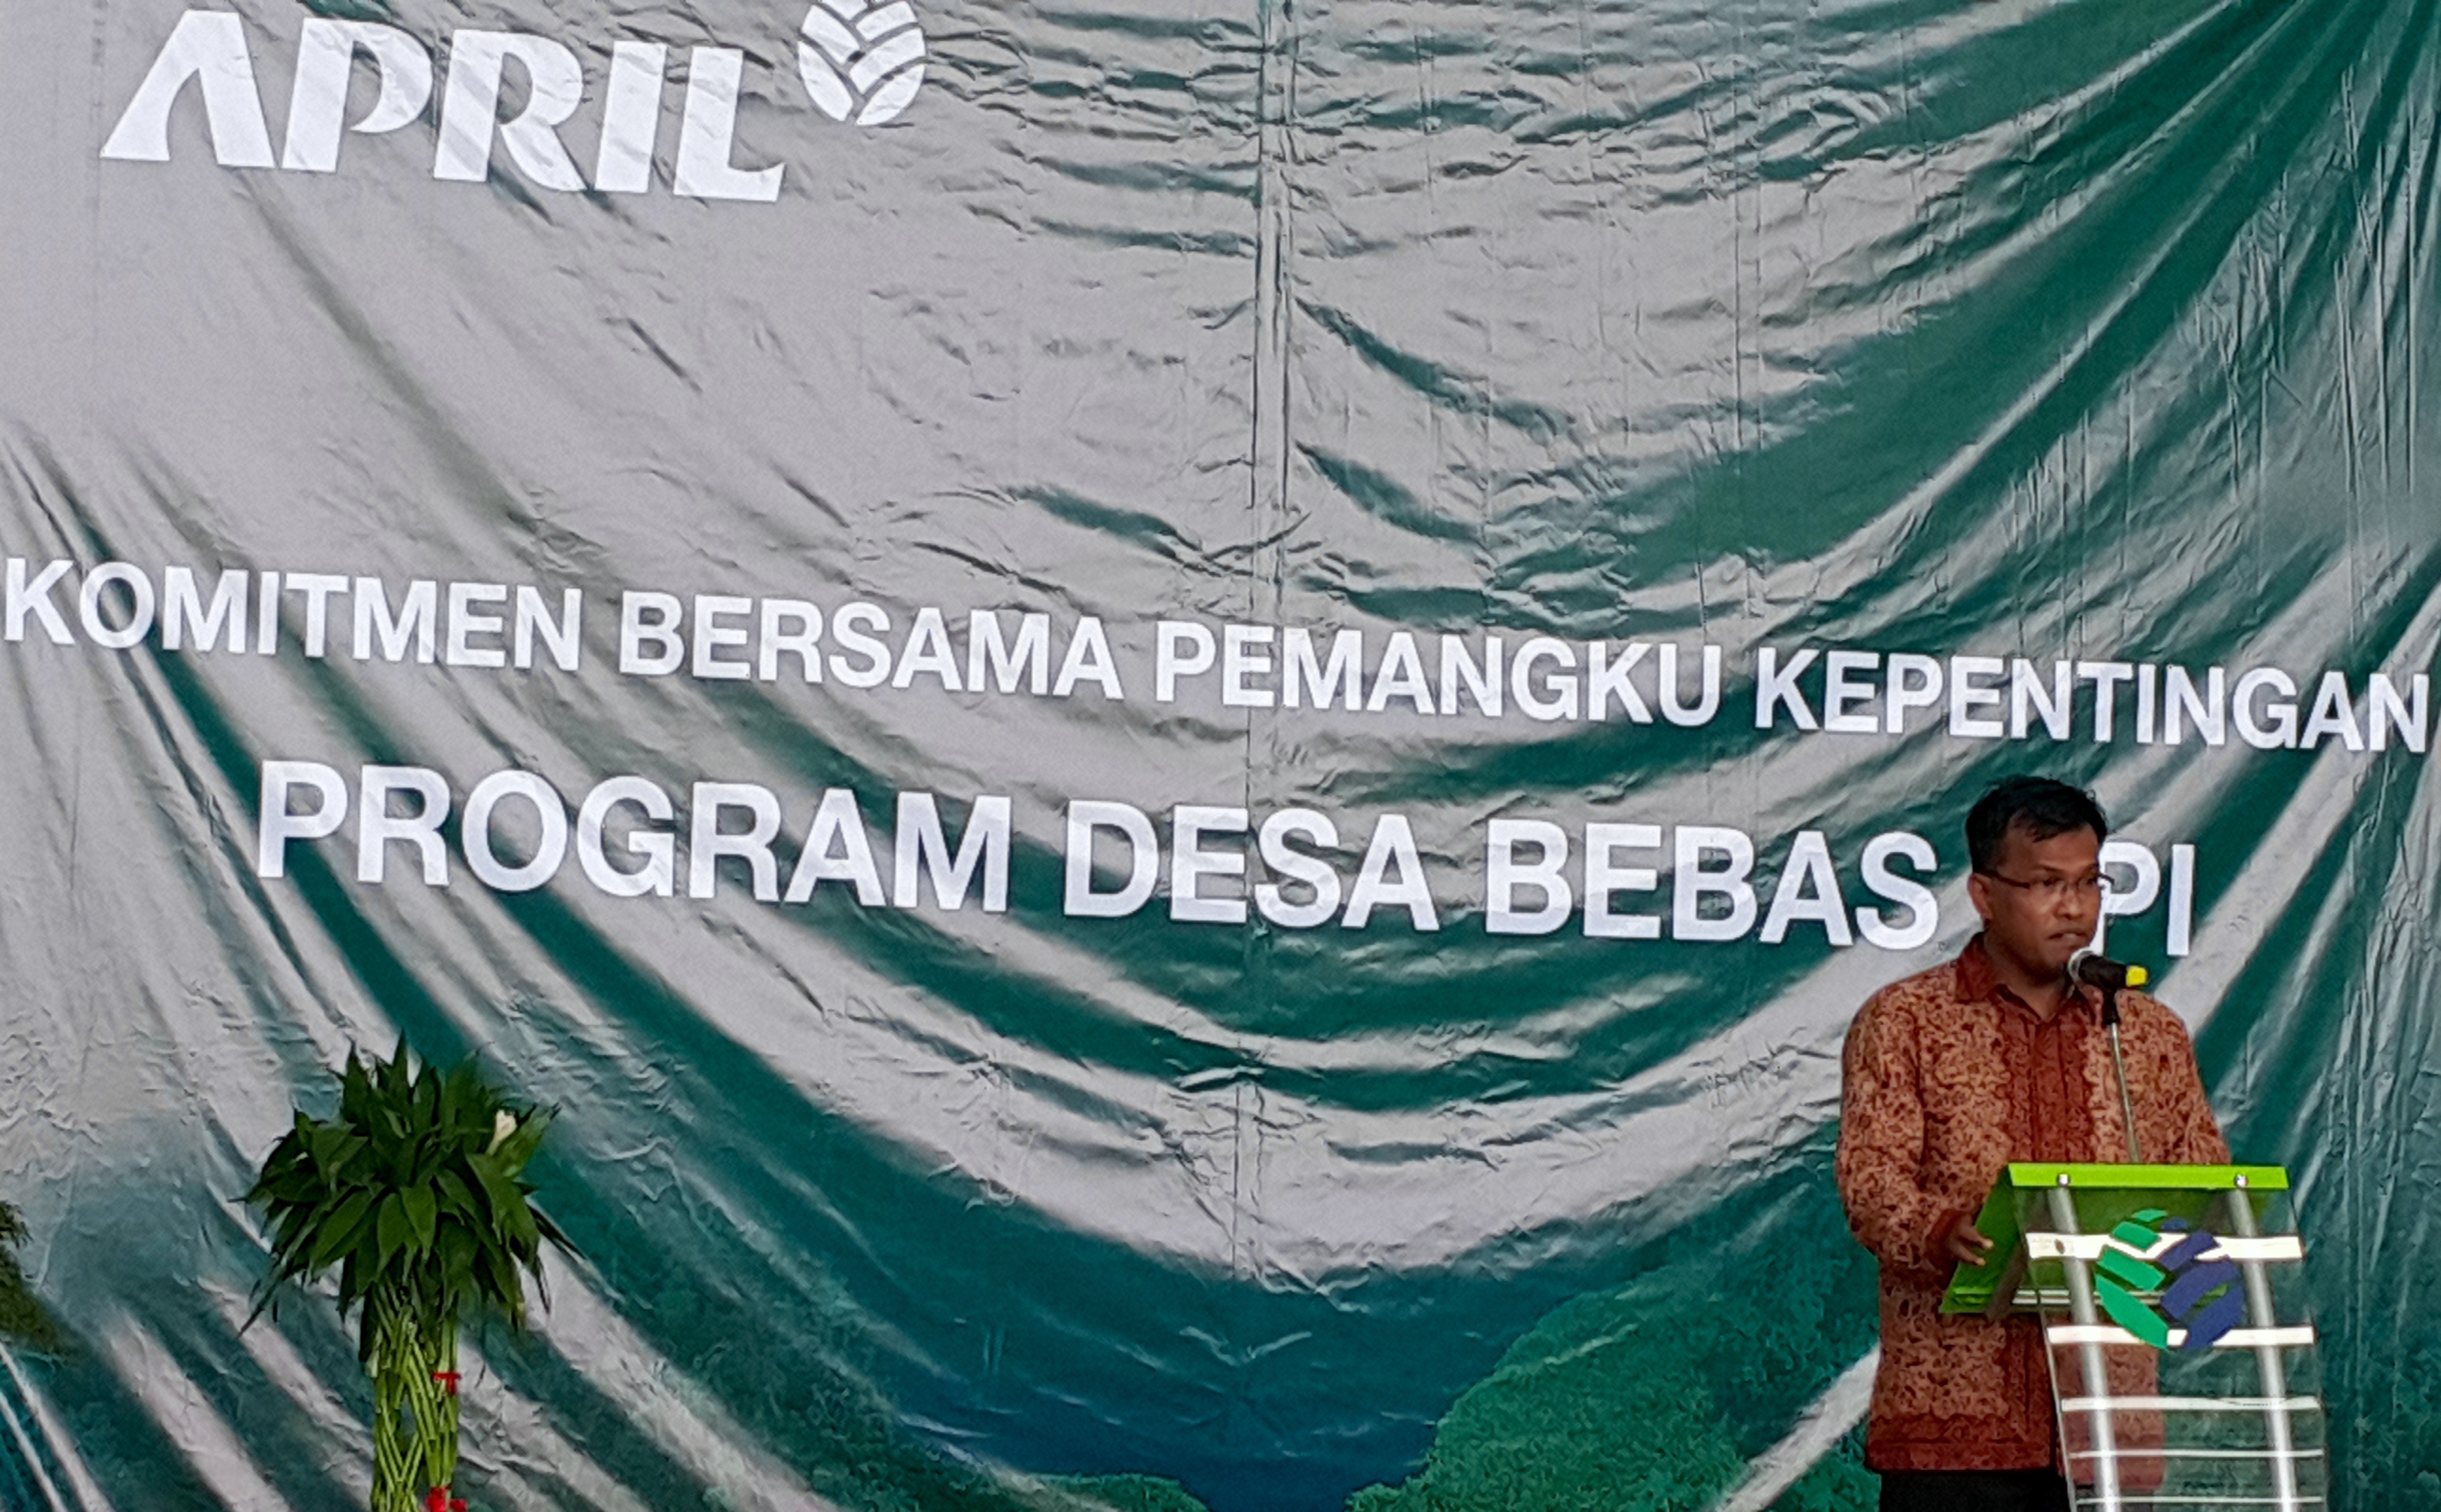 Rudi Fajar, director of Riau Andalan Pulp and Paper